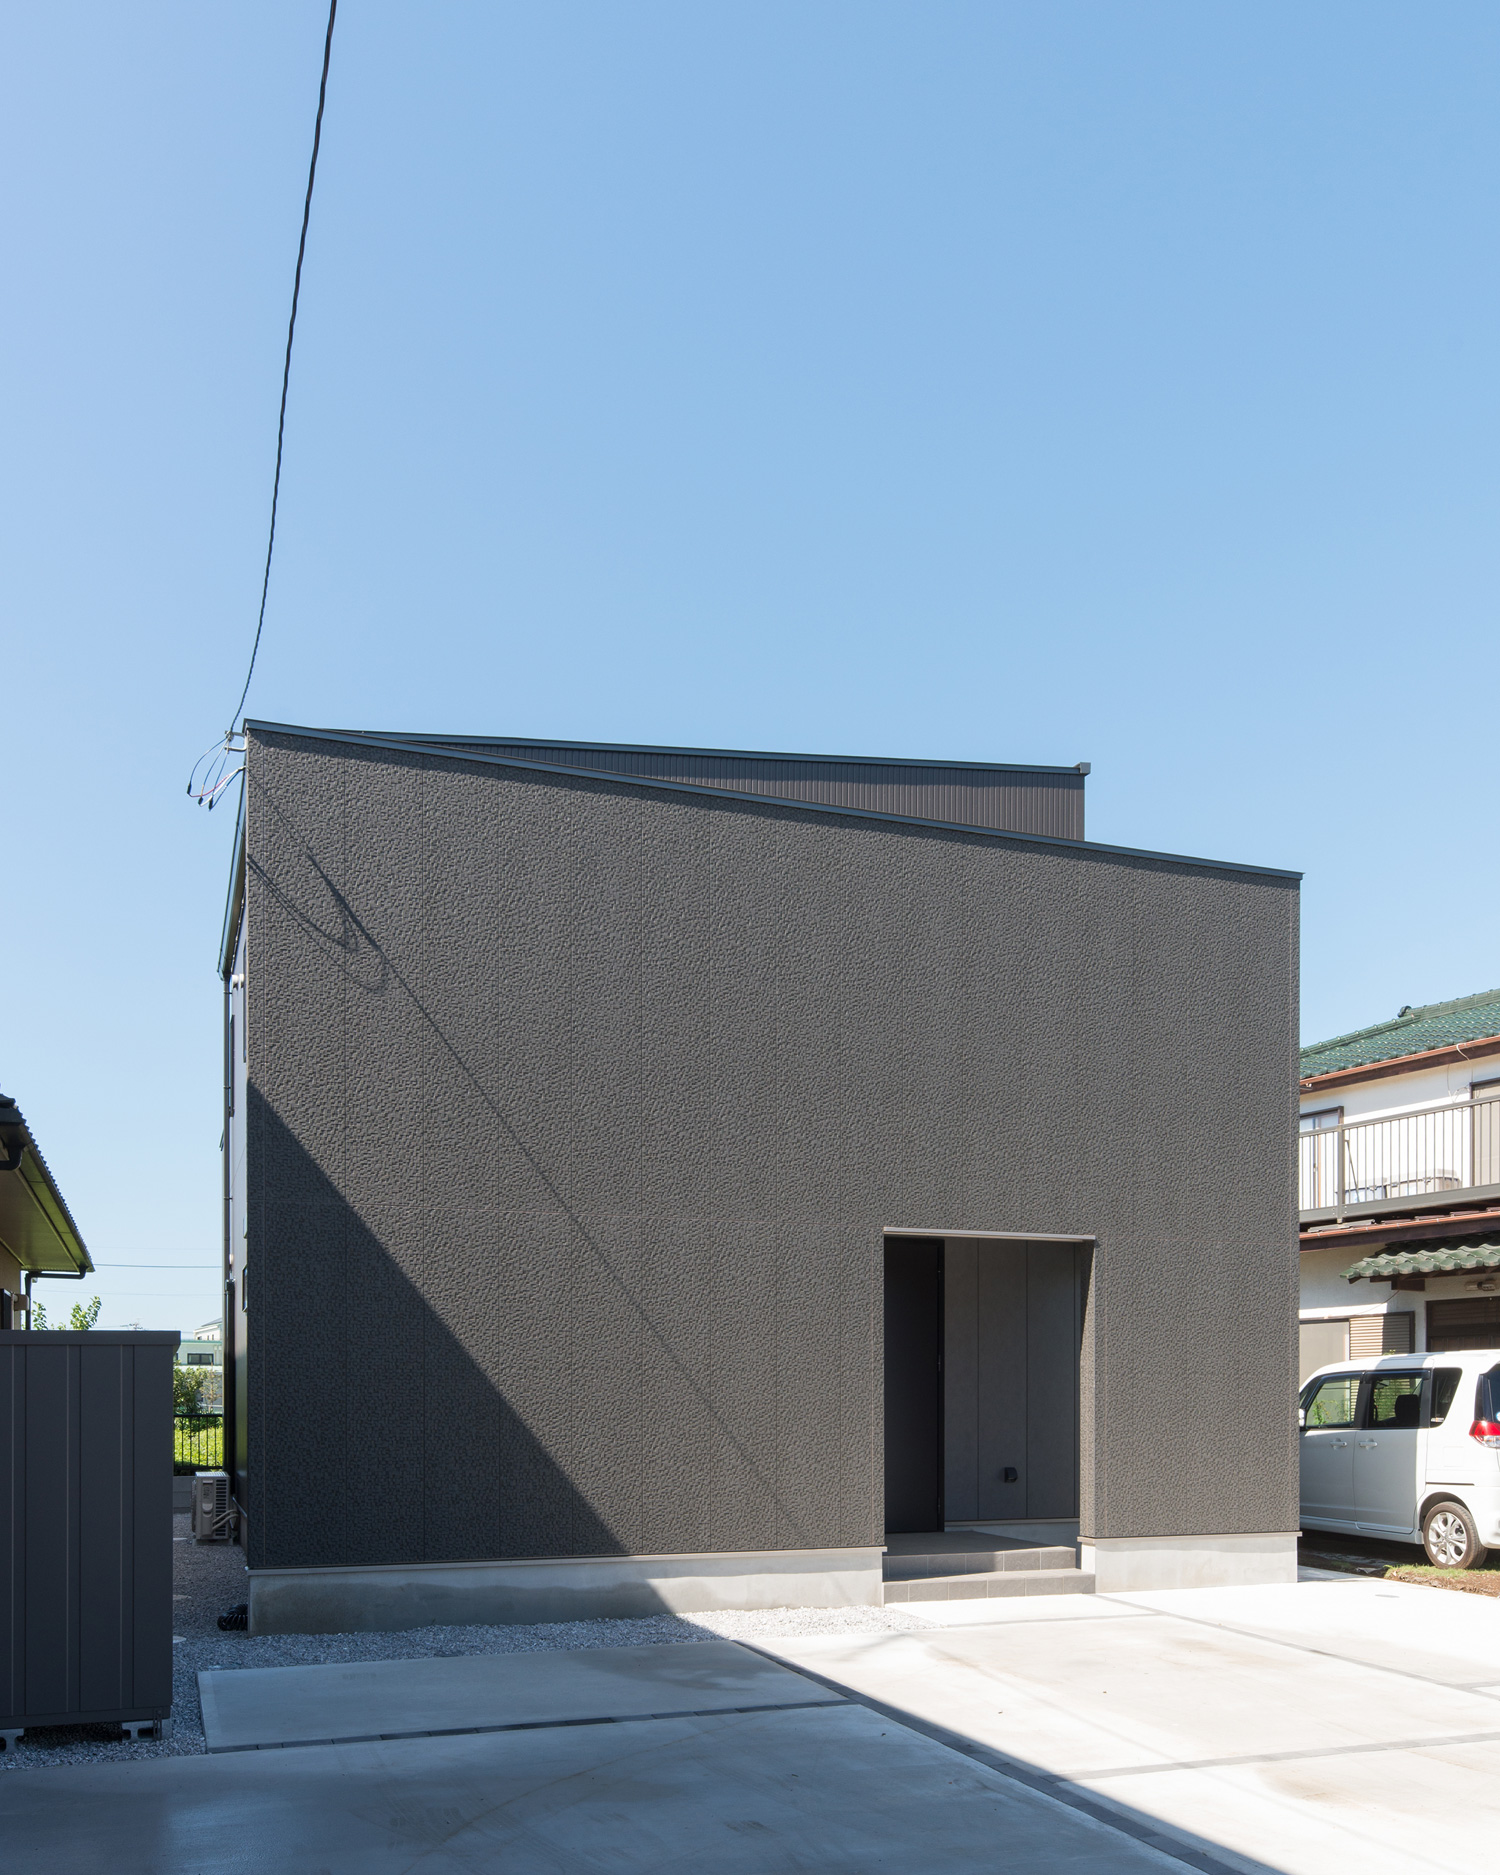 黒い外壁で、窓の無いキューブ状の外観の住宅・デザイン住宅